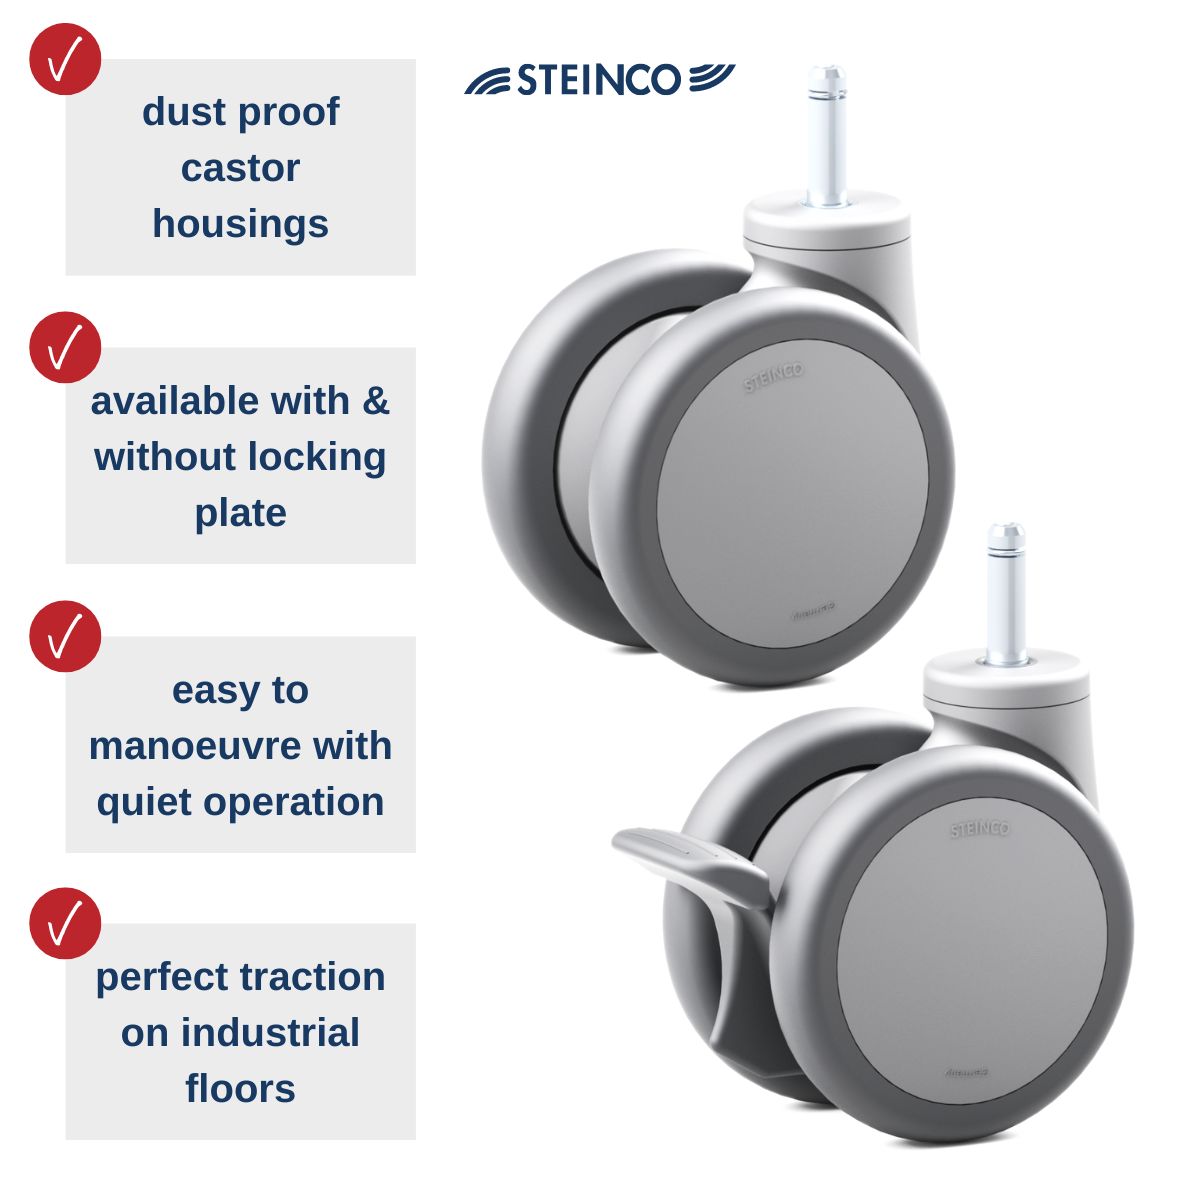 Plastic double castors for factory & office equipment - Premium quality - STEINCO castors and wheels